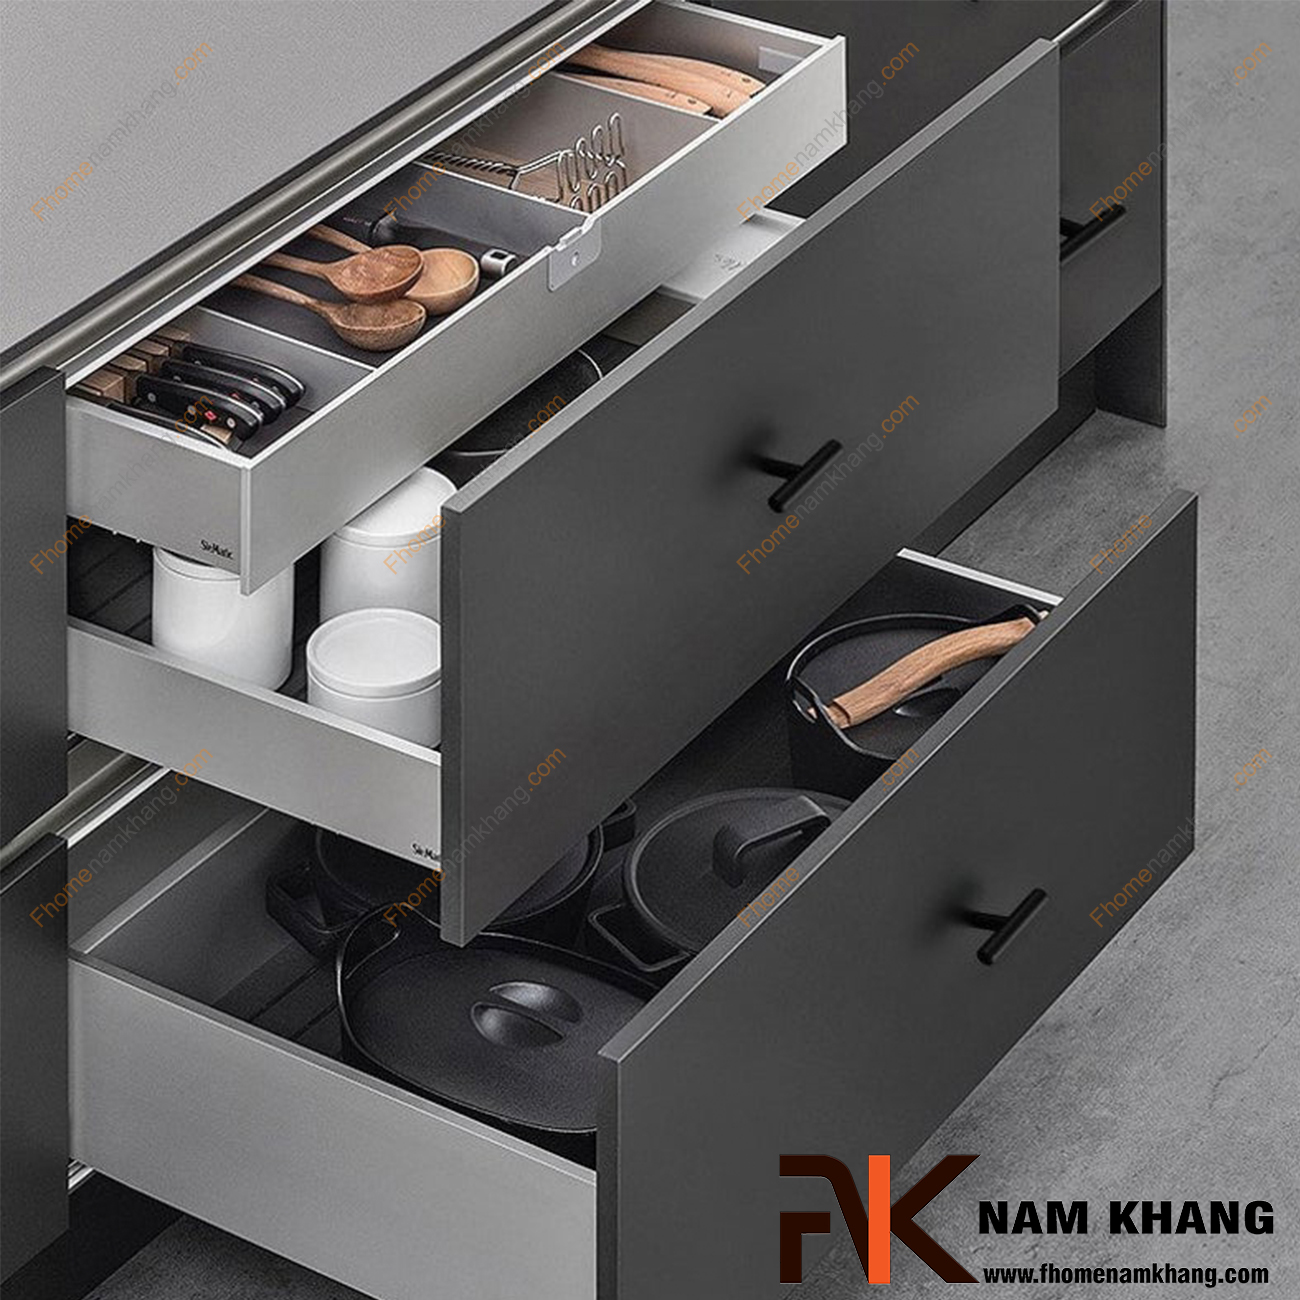 Núm cửa tủ dạng chữ T trơn màu đen NK238-D - sản phẩm phụ kiện tủ dạng chữ T đơn giản - tiện dụng - bền đẹp và dễ dàng phối hợp trên nhiều dạng tủ kệ.